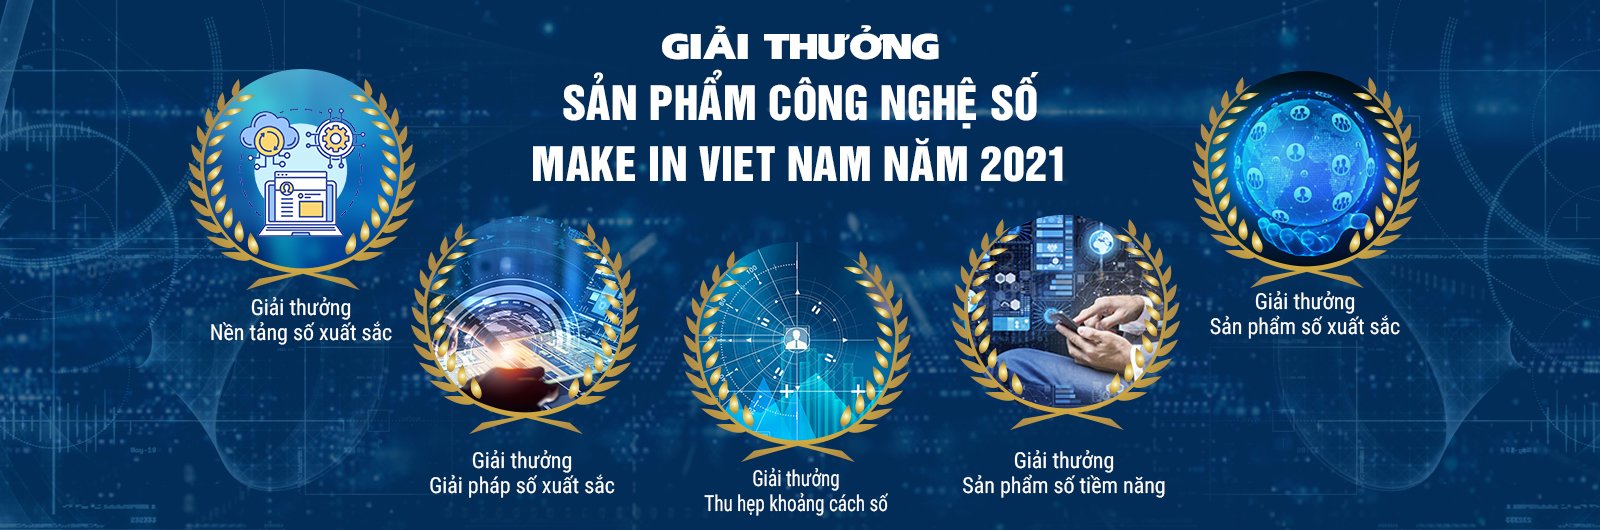 Giải thưởng “Sản phẩm Công nghệ số Make in Viet Nam” năm 2021 sắp được phát động - Ảnh 1.